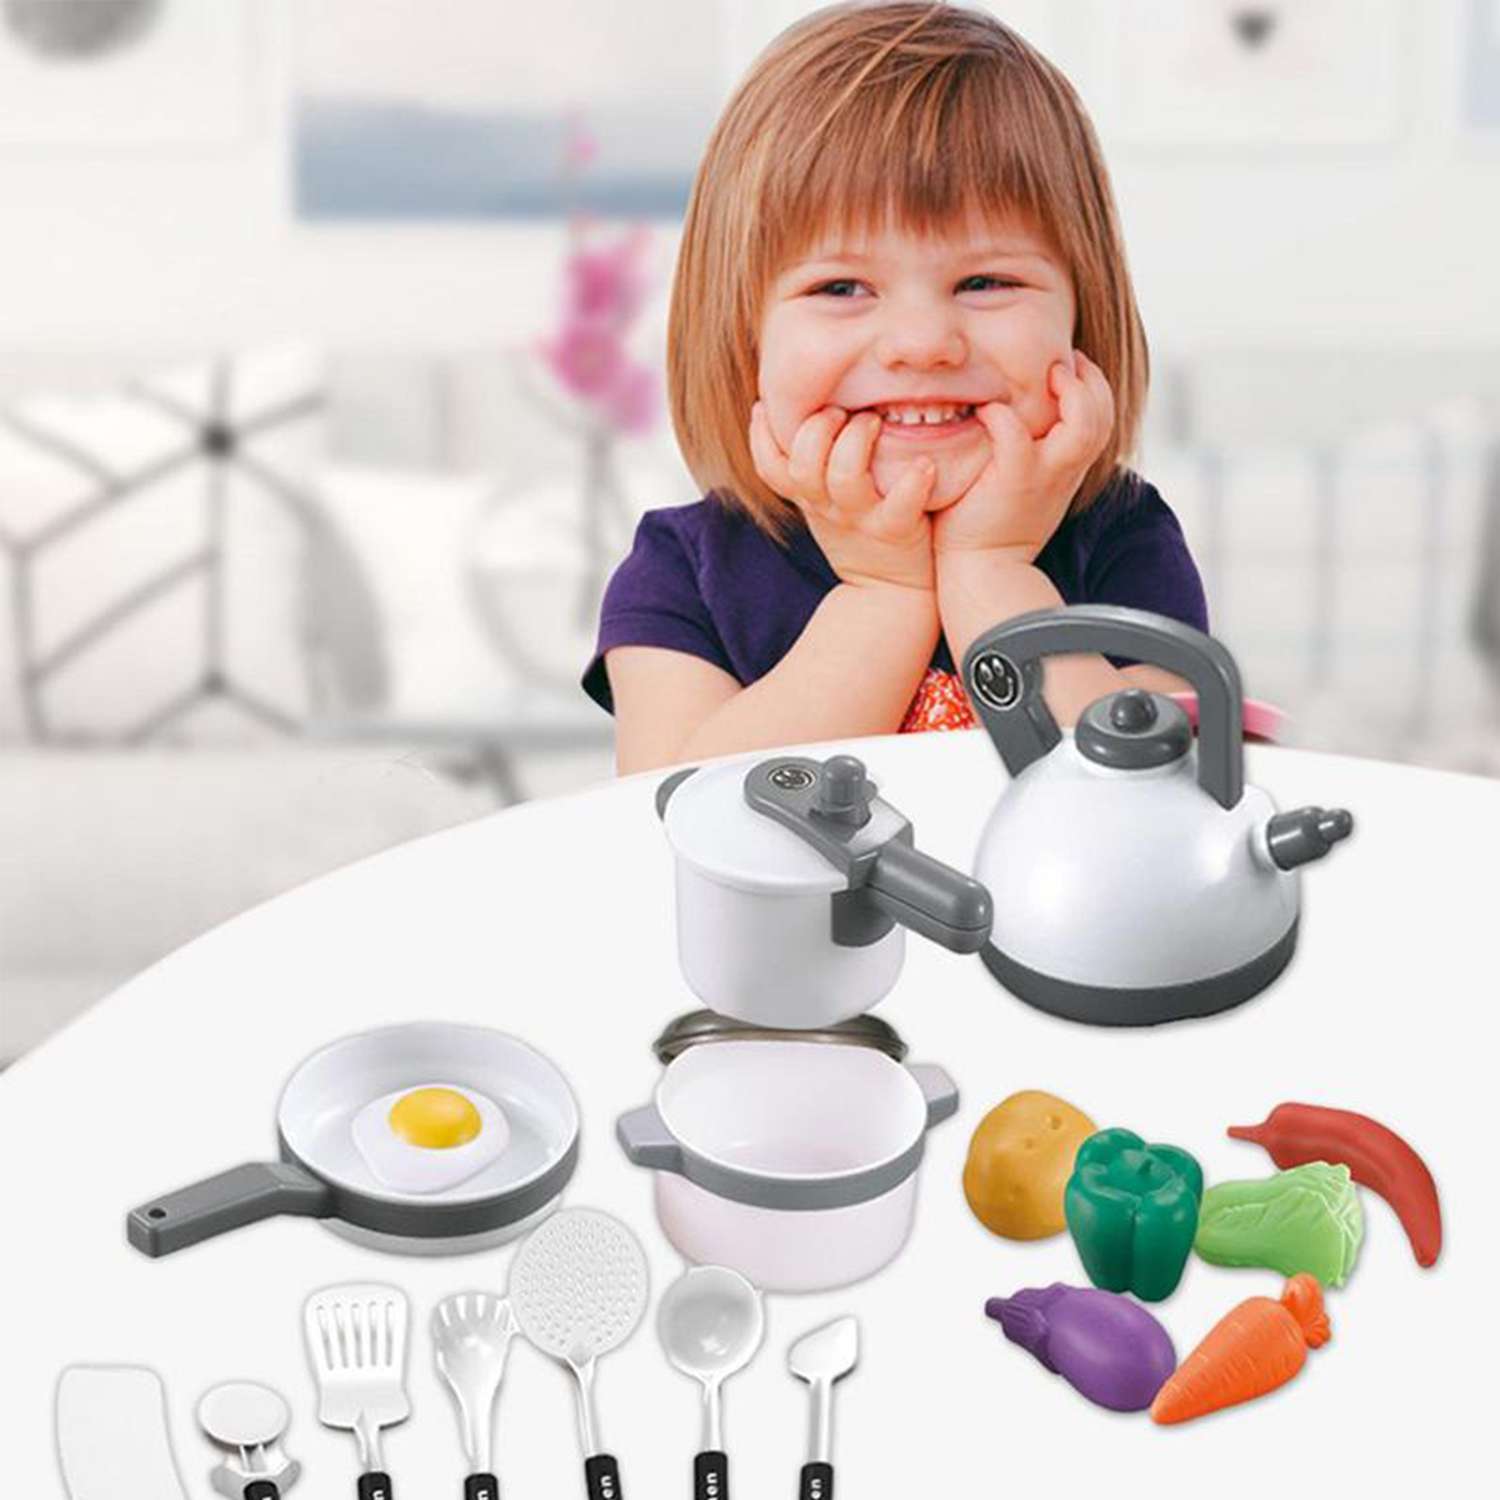 Детский игровой набор SHARKTOYS игрушечной посуды для куклы 18 предметов белый - фото 2